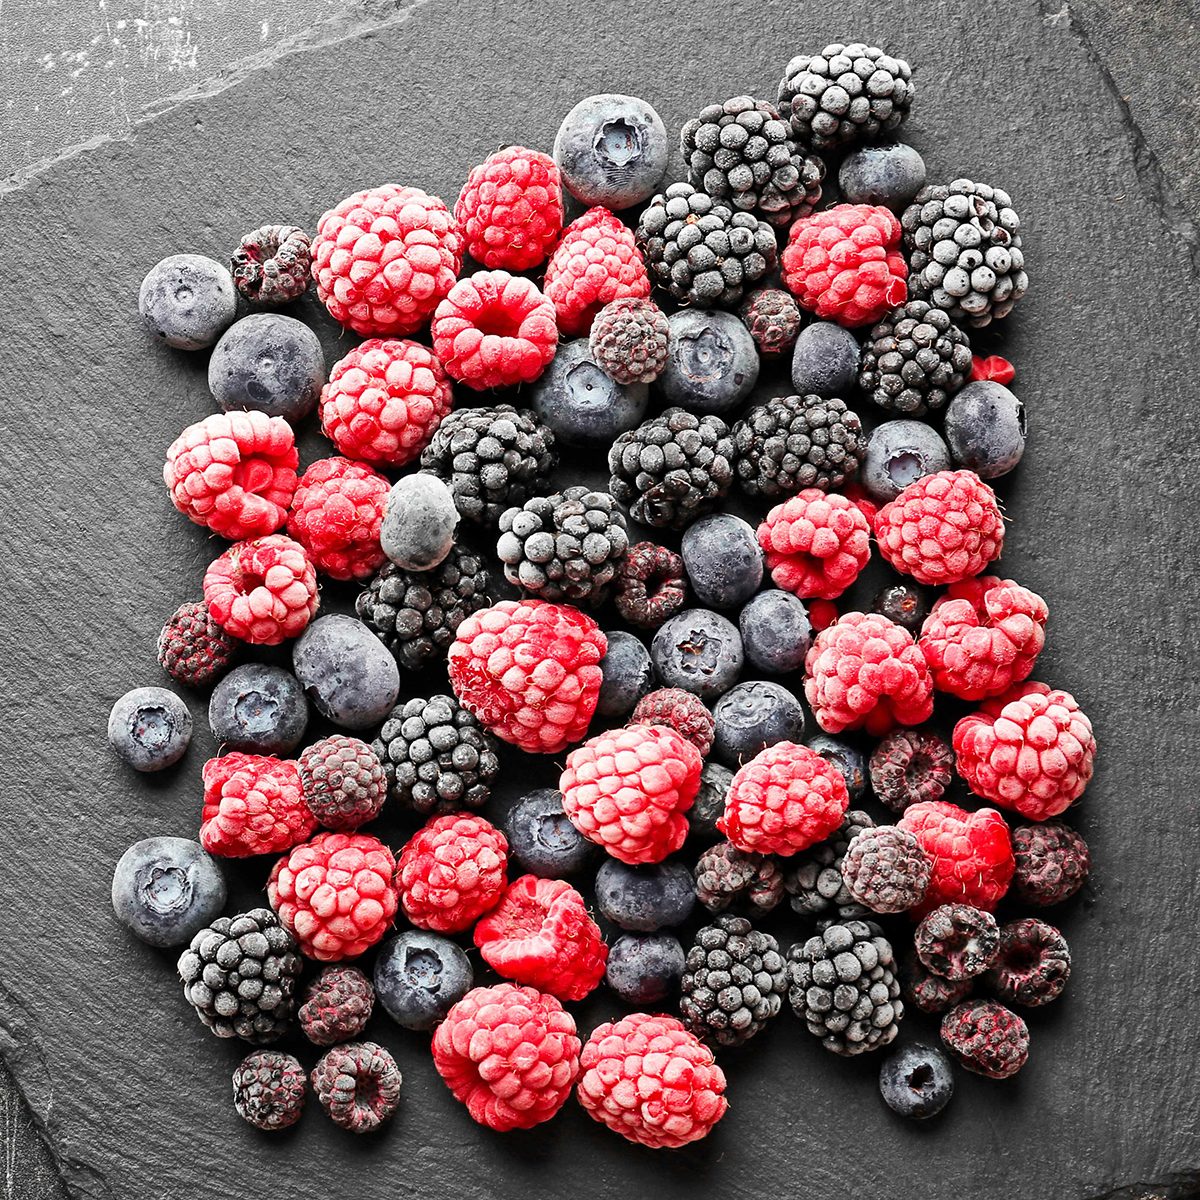 Costco frozen berries